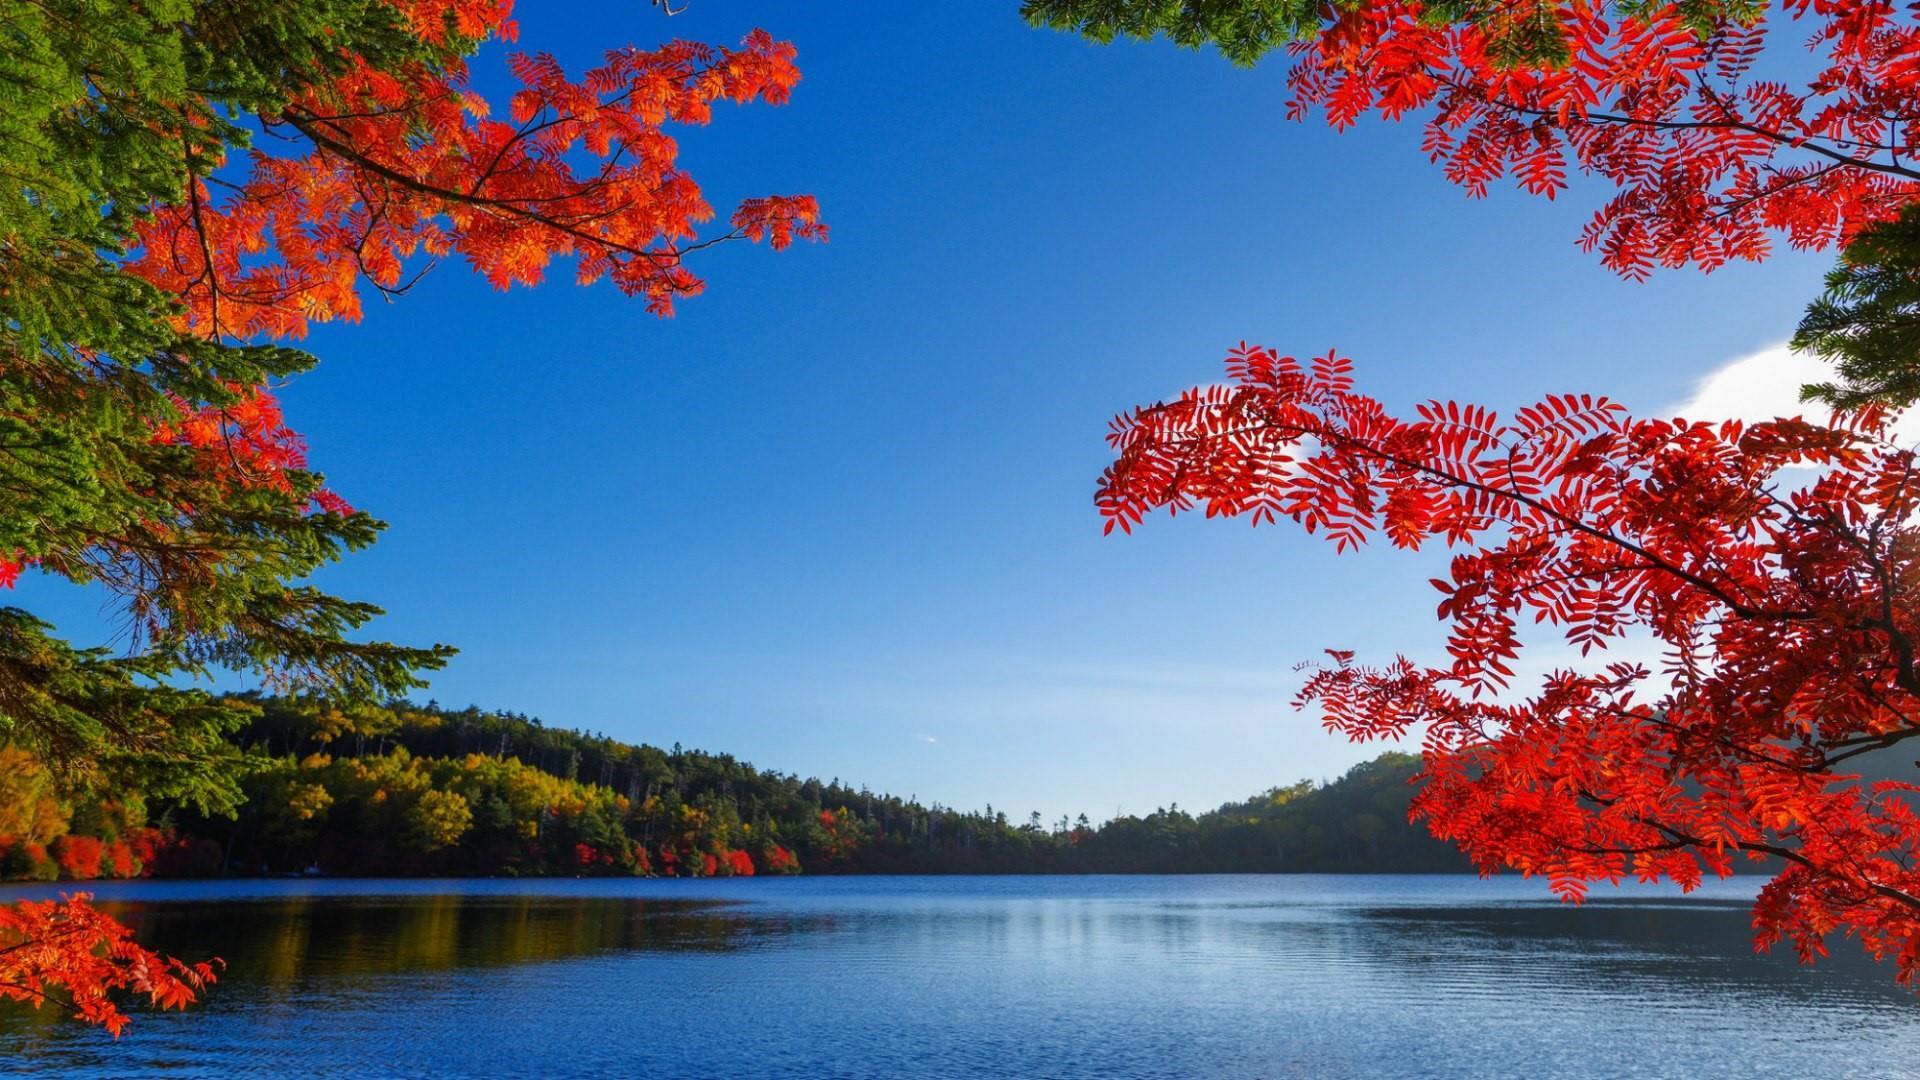 Autumn Lake photo wallpaper